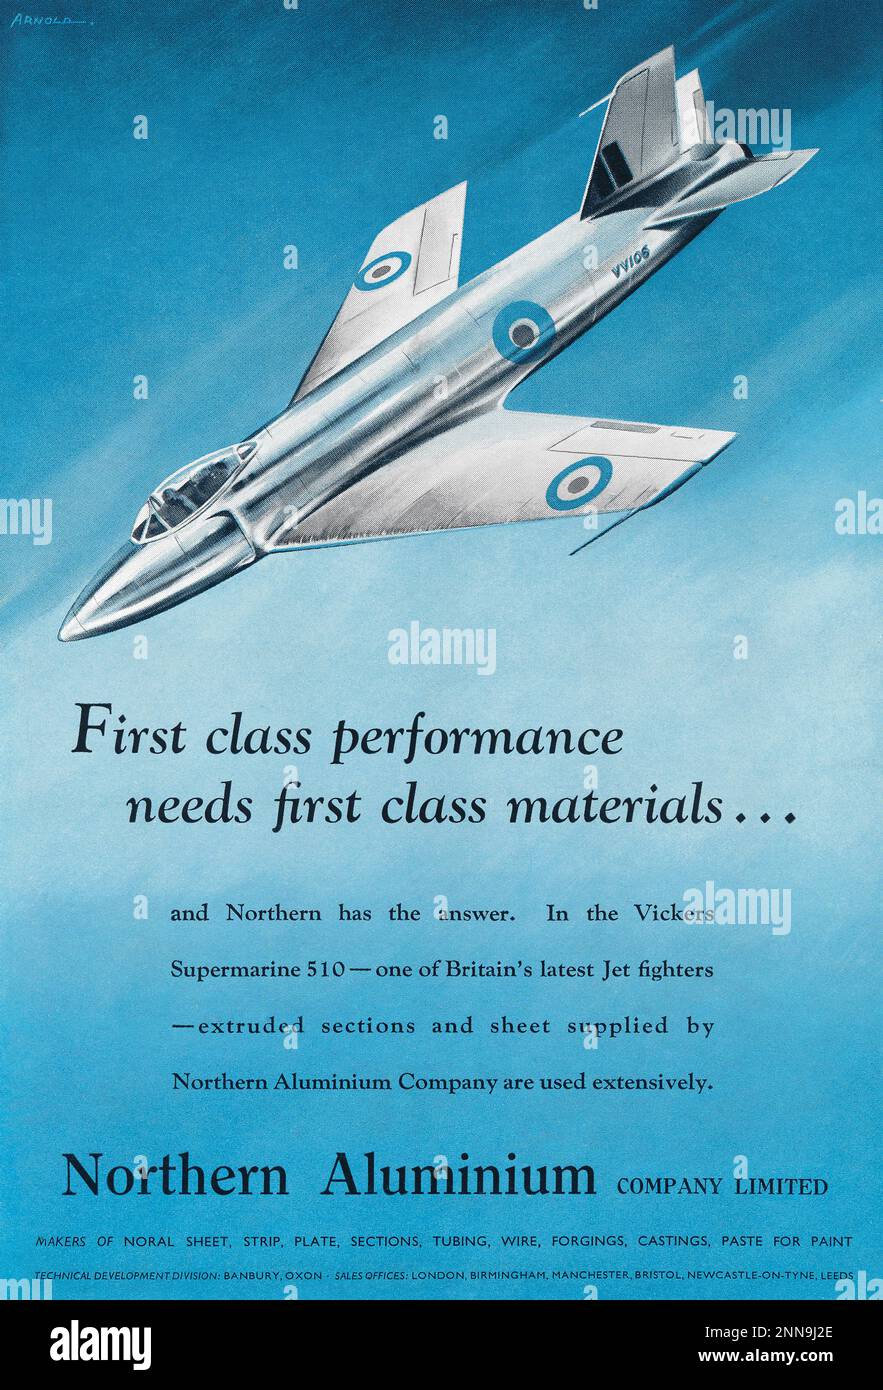 1950 britische Werbung für Northern Aluminium, in der der Prototyp des Düsenflugzeugs Supermarine 510 gezeigt wird. Stockfoto